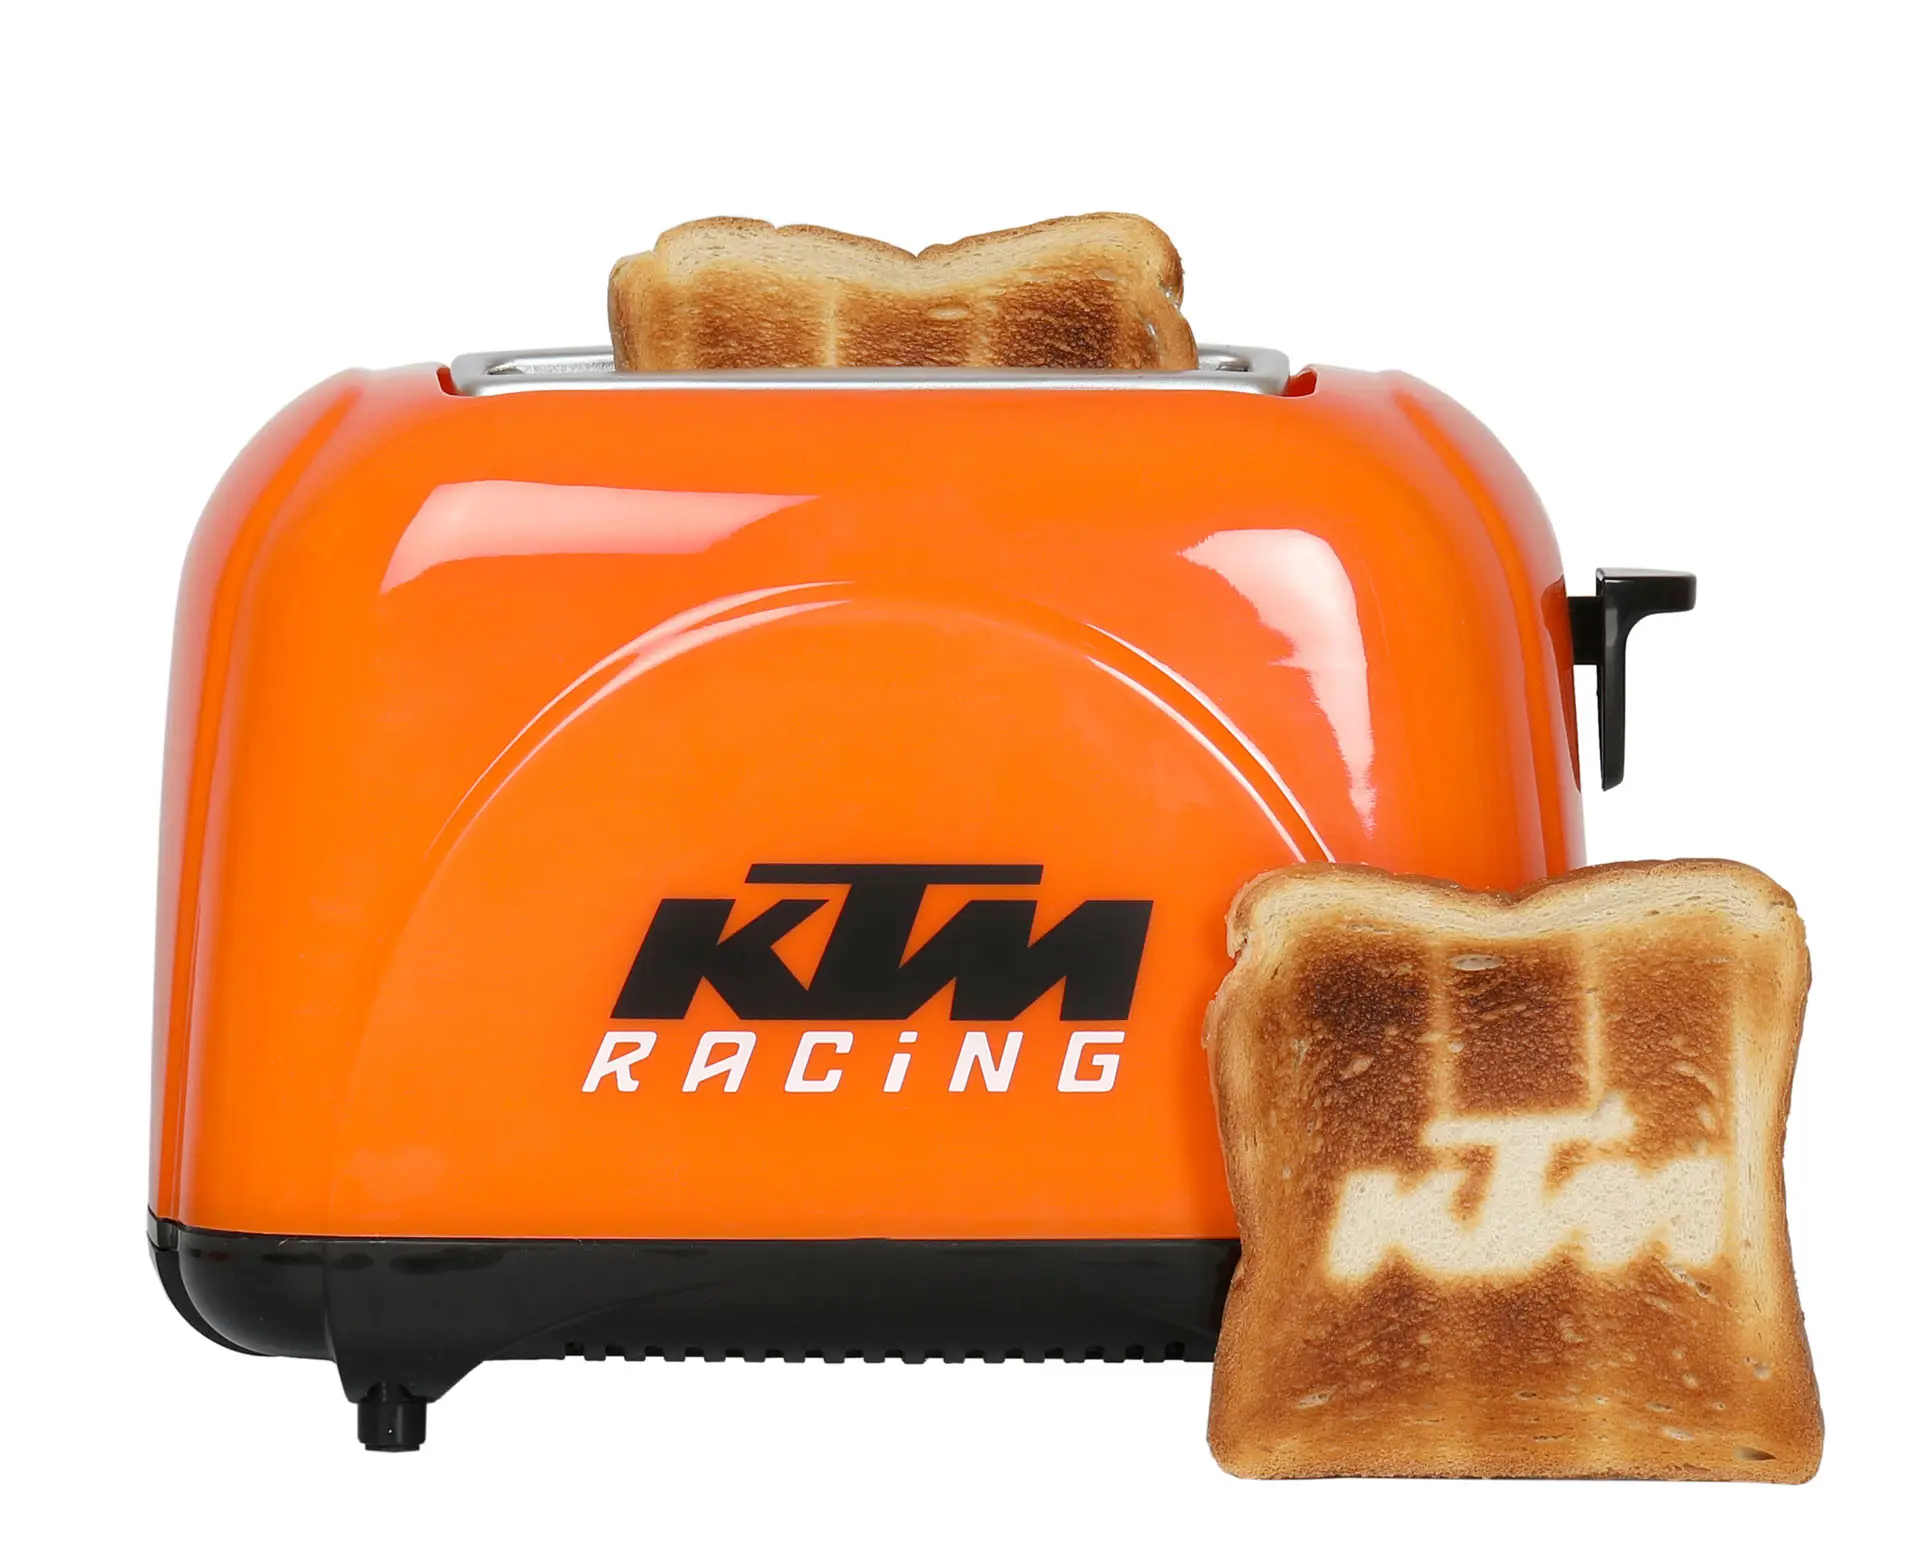 logo toaster- toaster bedruckt